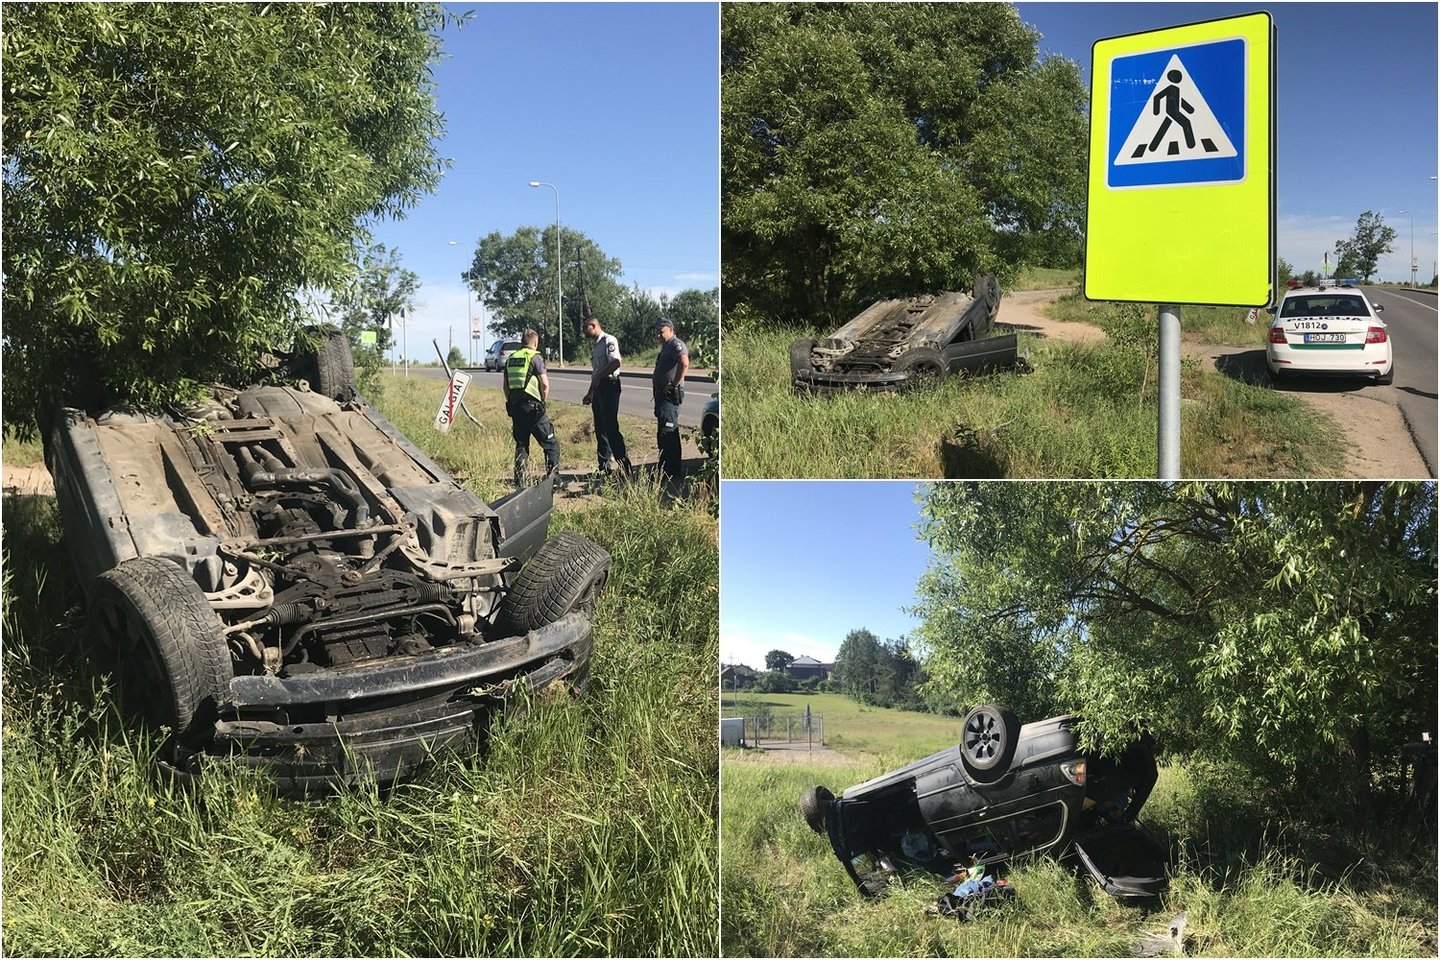  Vilniaus pakraštyje apsivertė BMW, keturi jaunuoliai spruko neatsigręždami.<br> Įvykio liudininko nuotr.